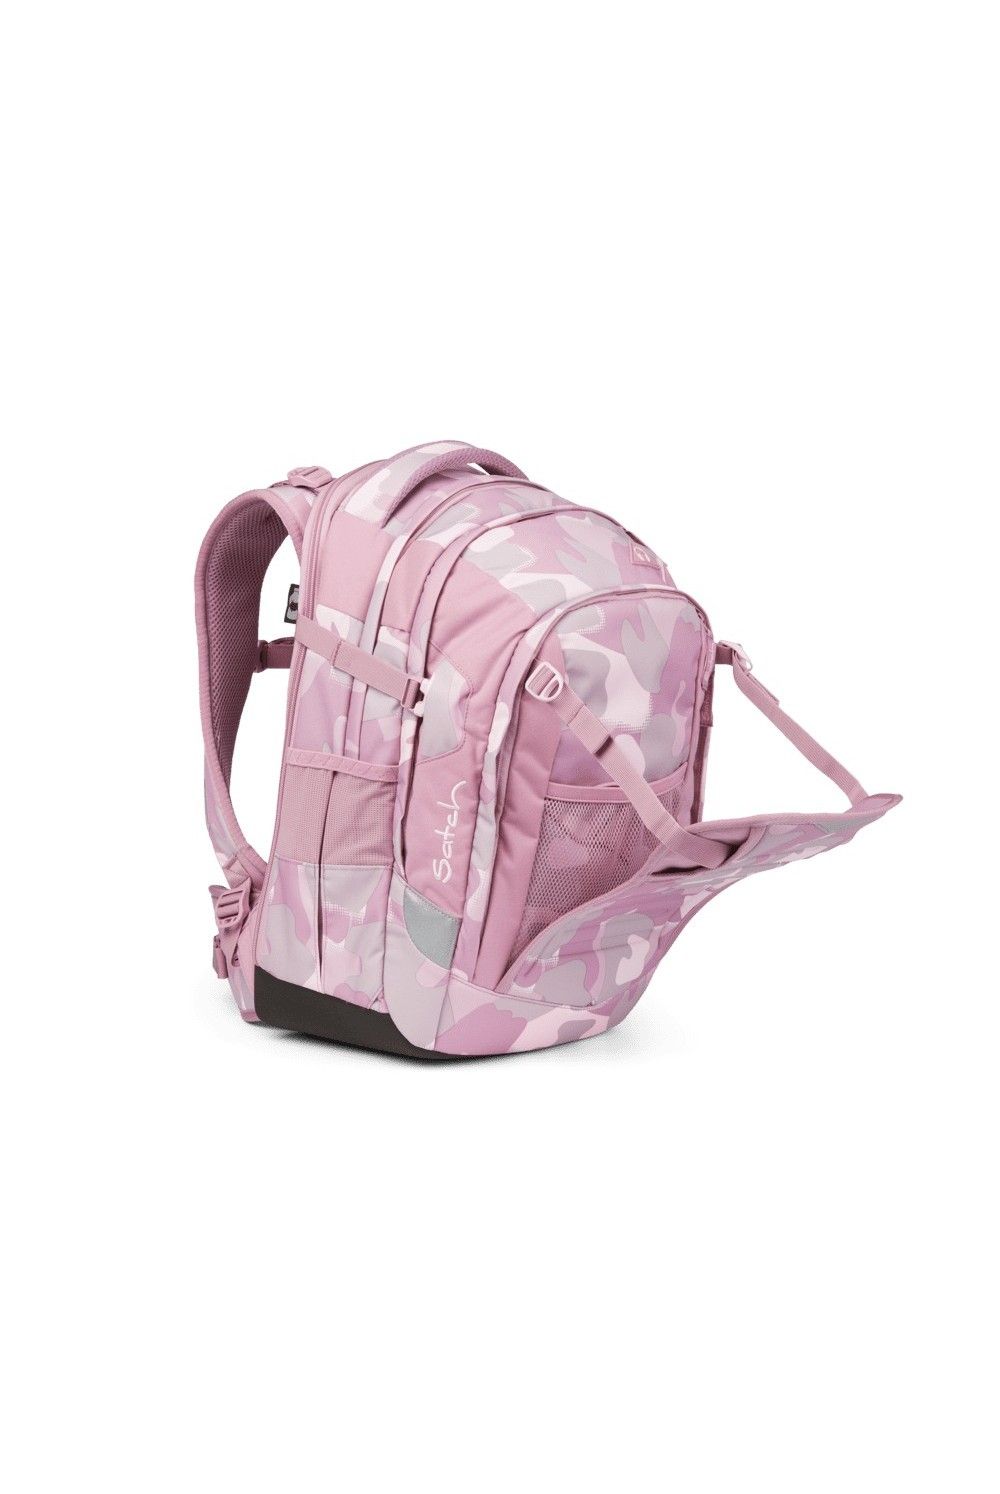 Satch school backpack Match Heartbreaker